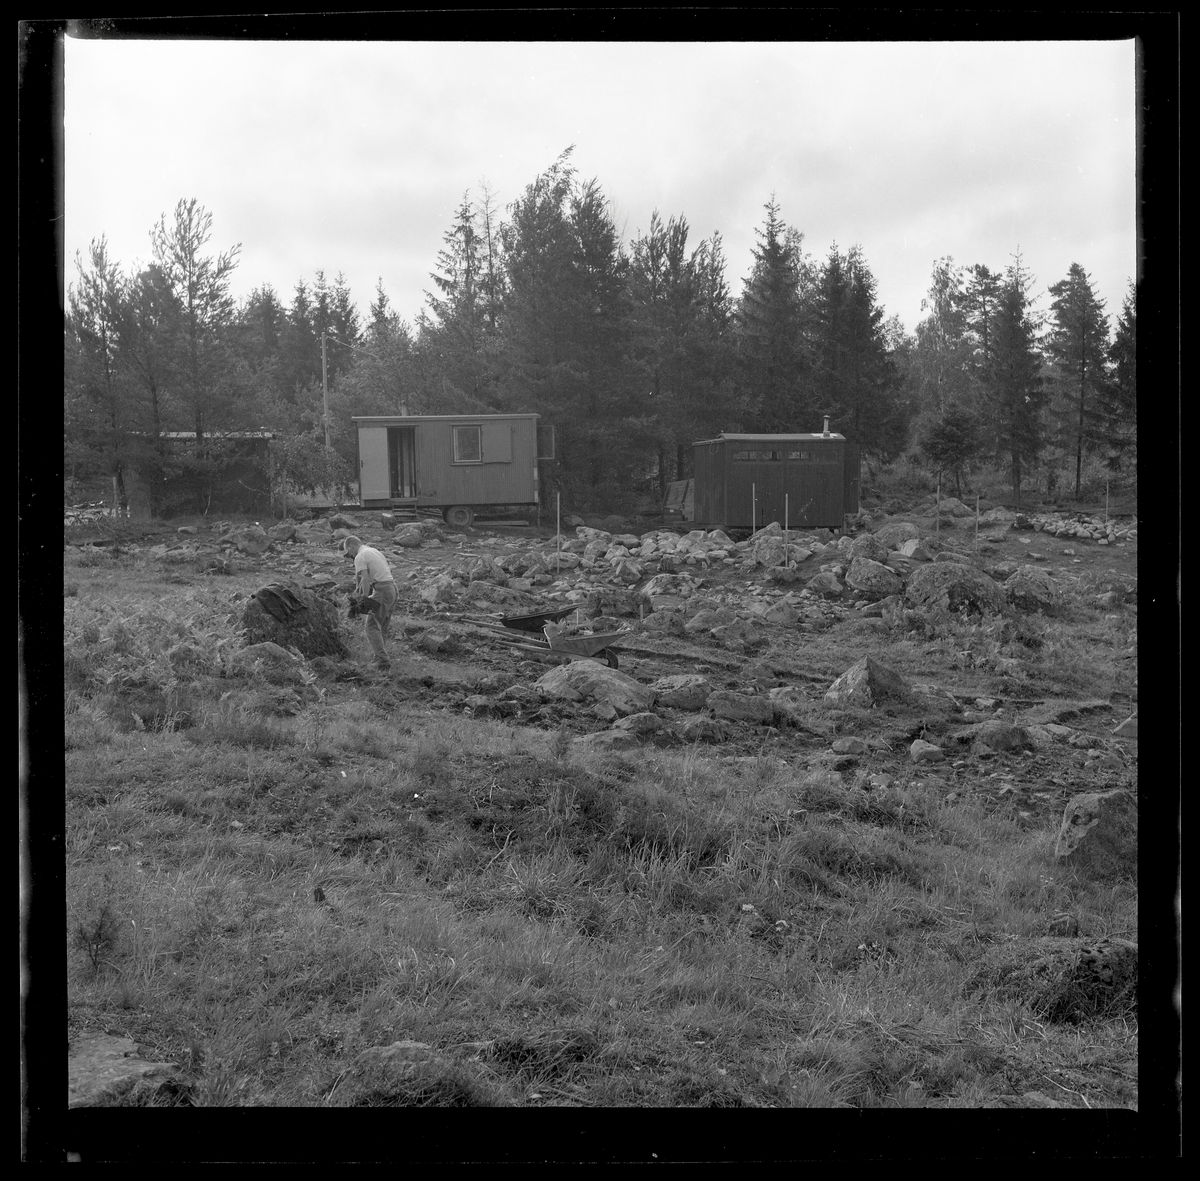 Svedvi sn Rallsta RAÄ 16 Arkeologisk undersökning utförd av Vlm / Henry Simonsson 1960-61.

Del av gravfältet med personalens kupor i bakgrunden.